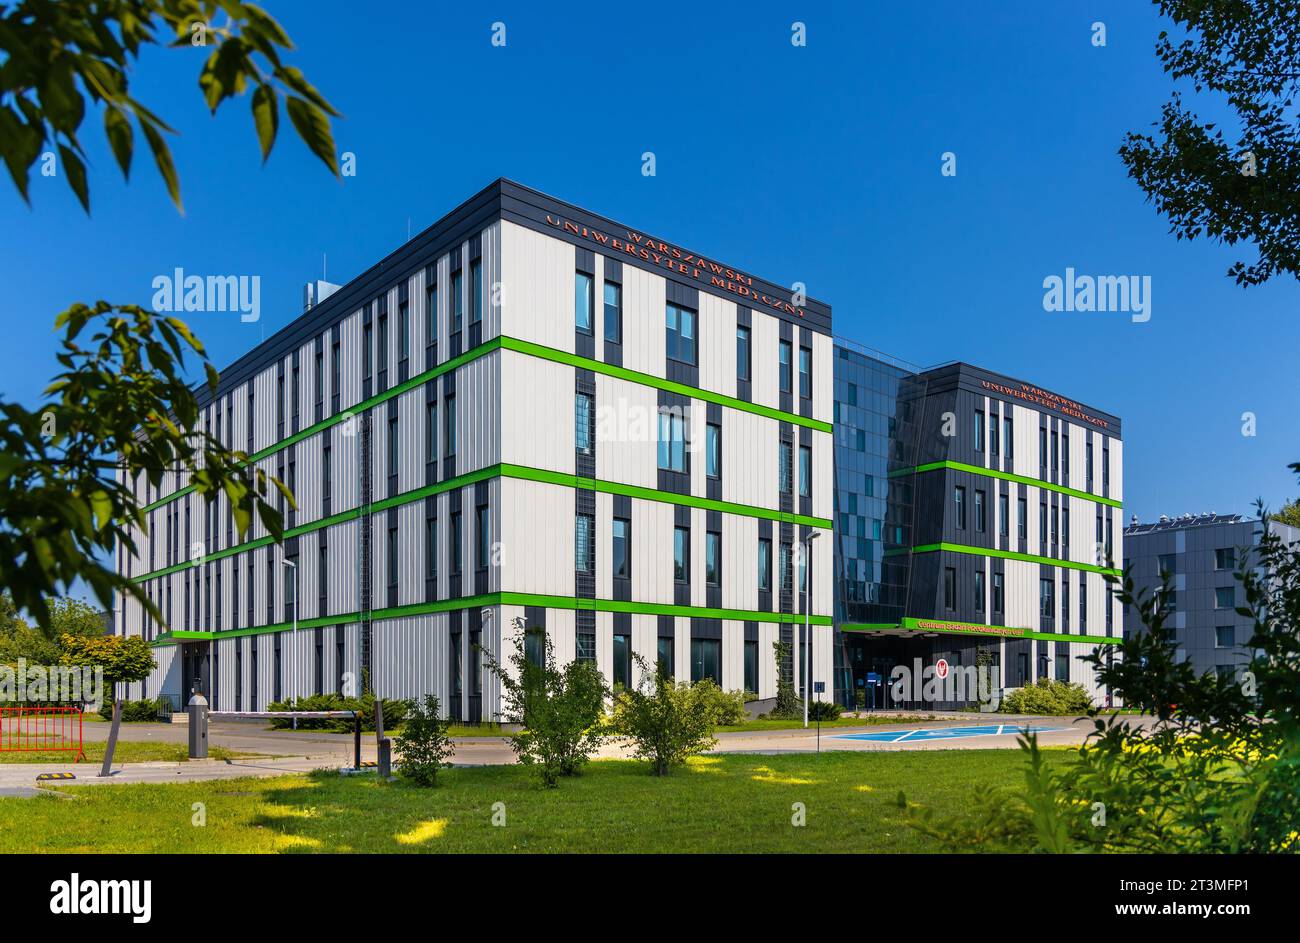 Varsavia, Polonia - 25 luglio 2021: Centro di ricerca pre-clinica Centrum Badan Przedklinicznych dell'Università medica in via Zwirki i Wigury a Mokotow Foto Stock